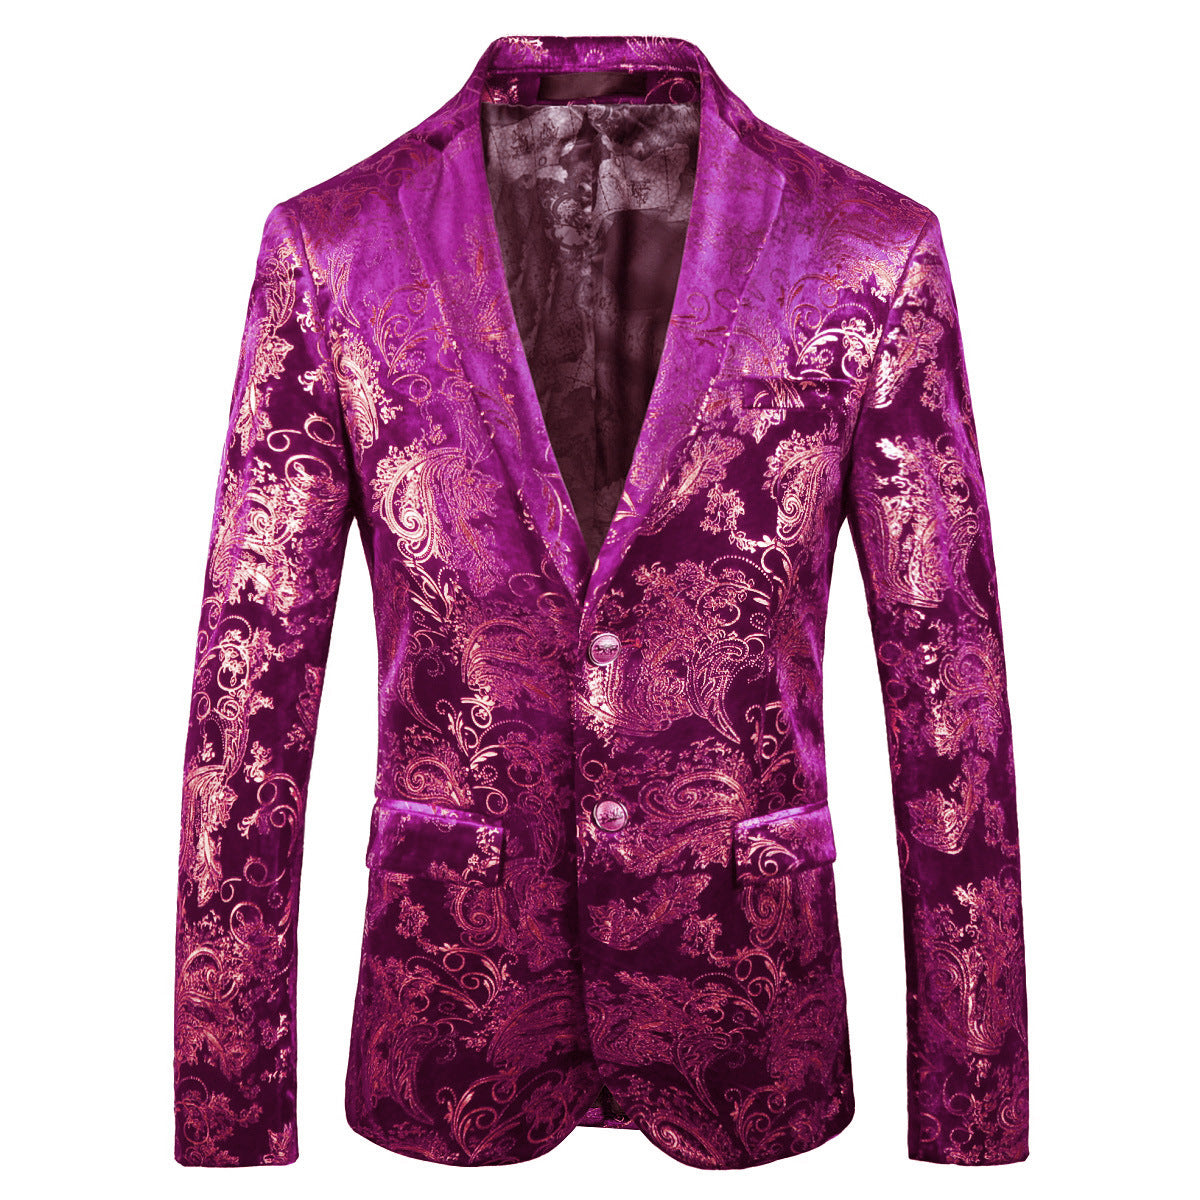 Elegance in Embossed Patterns Blazer S8061-2-Purple